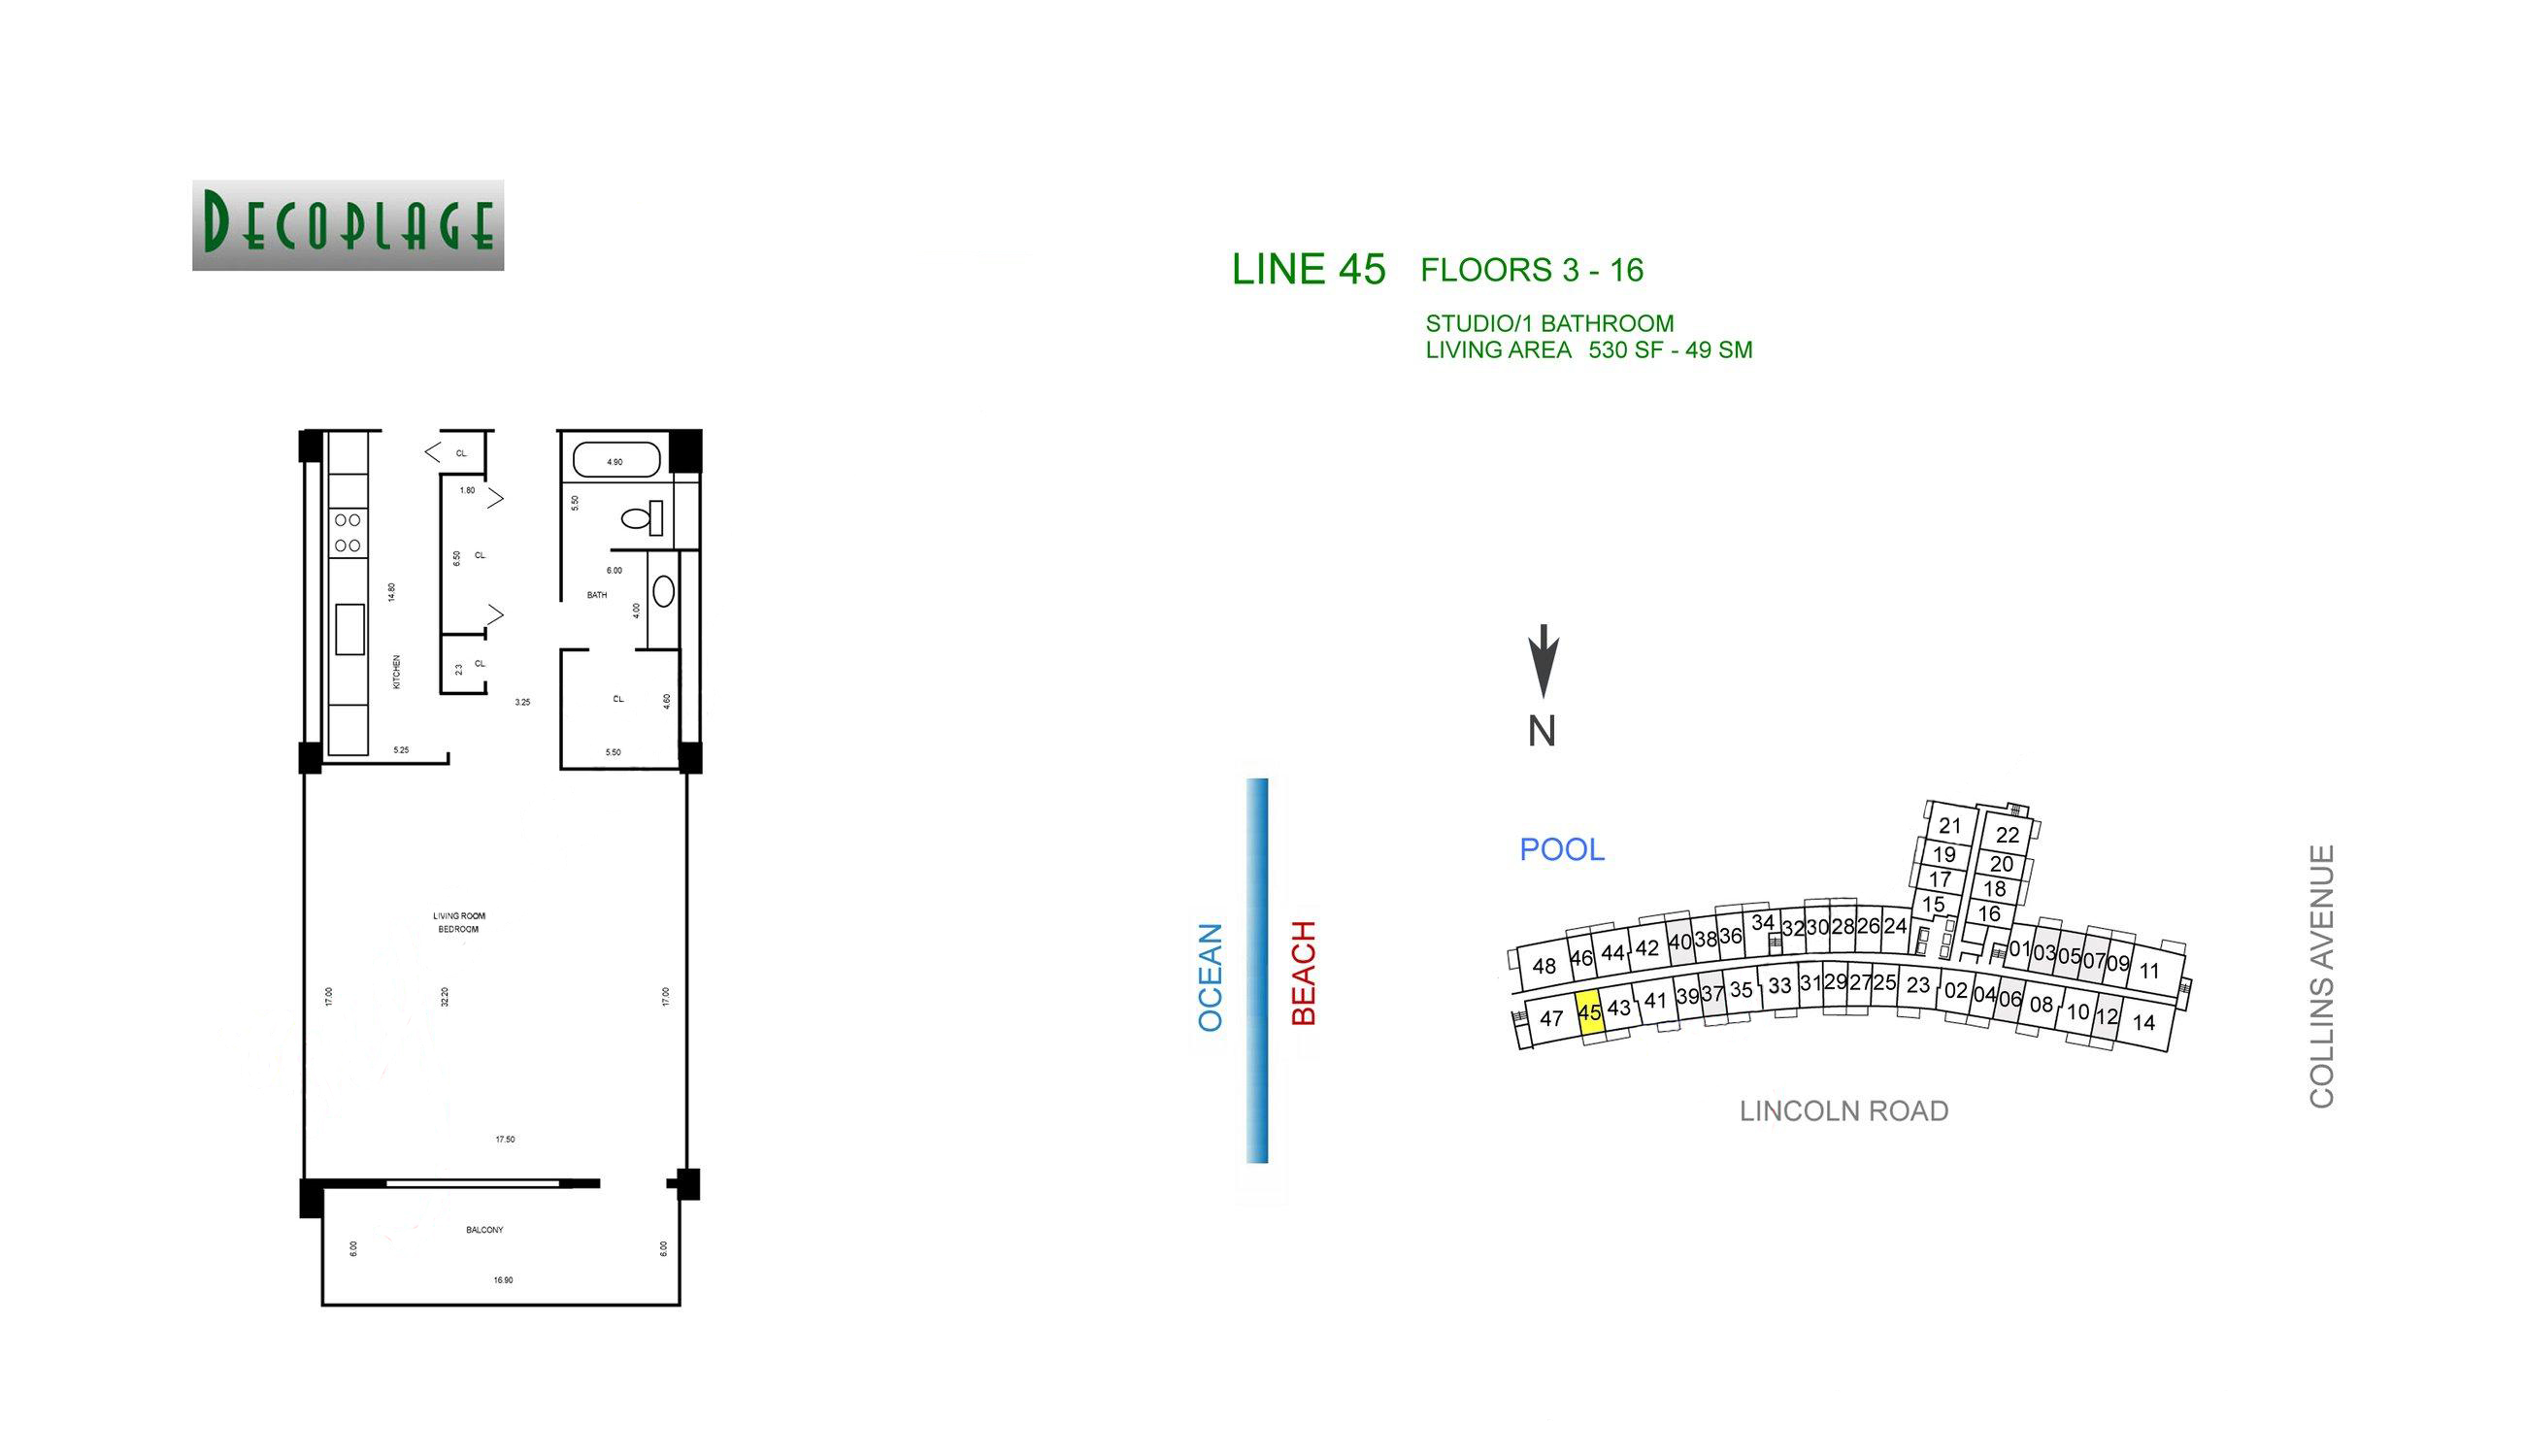 Decoplage Lines 45 Floors 3-16